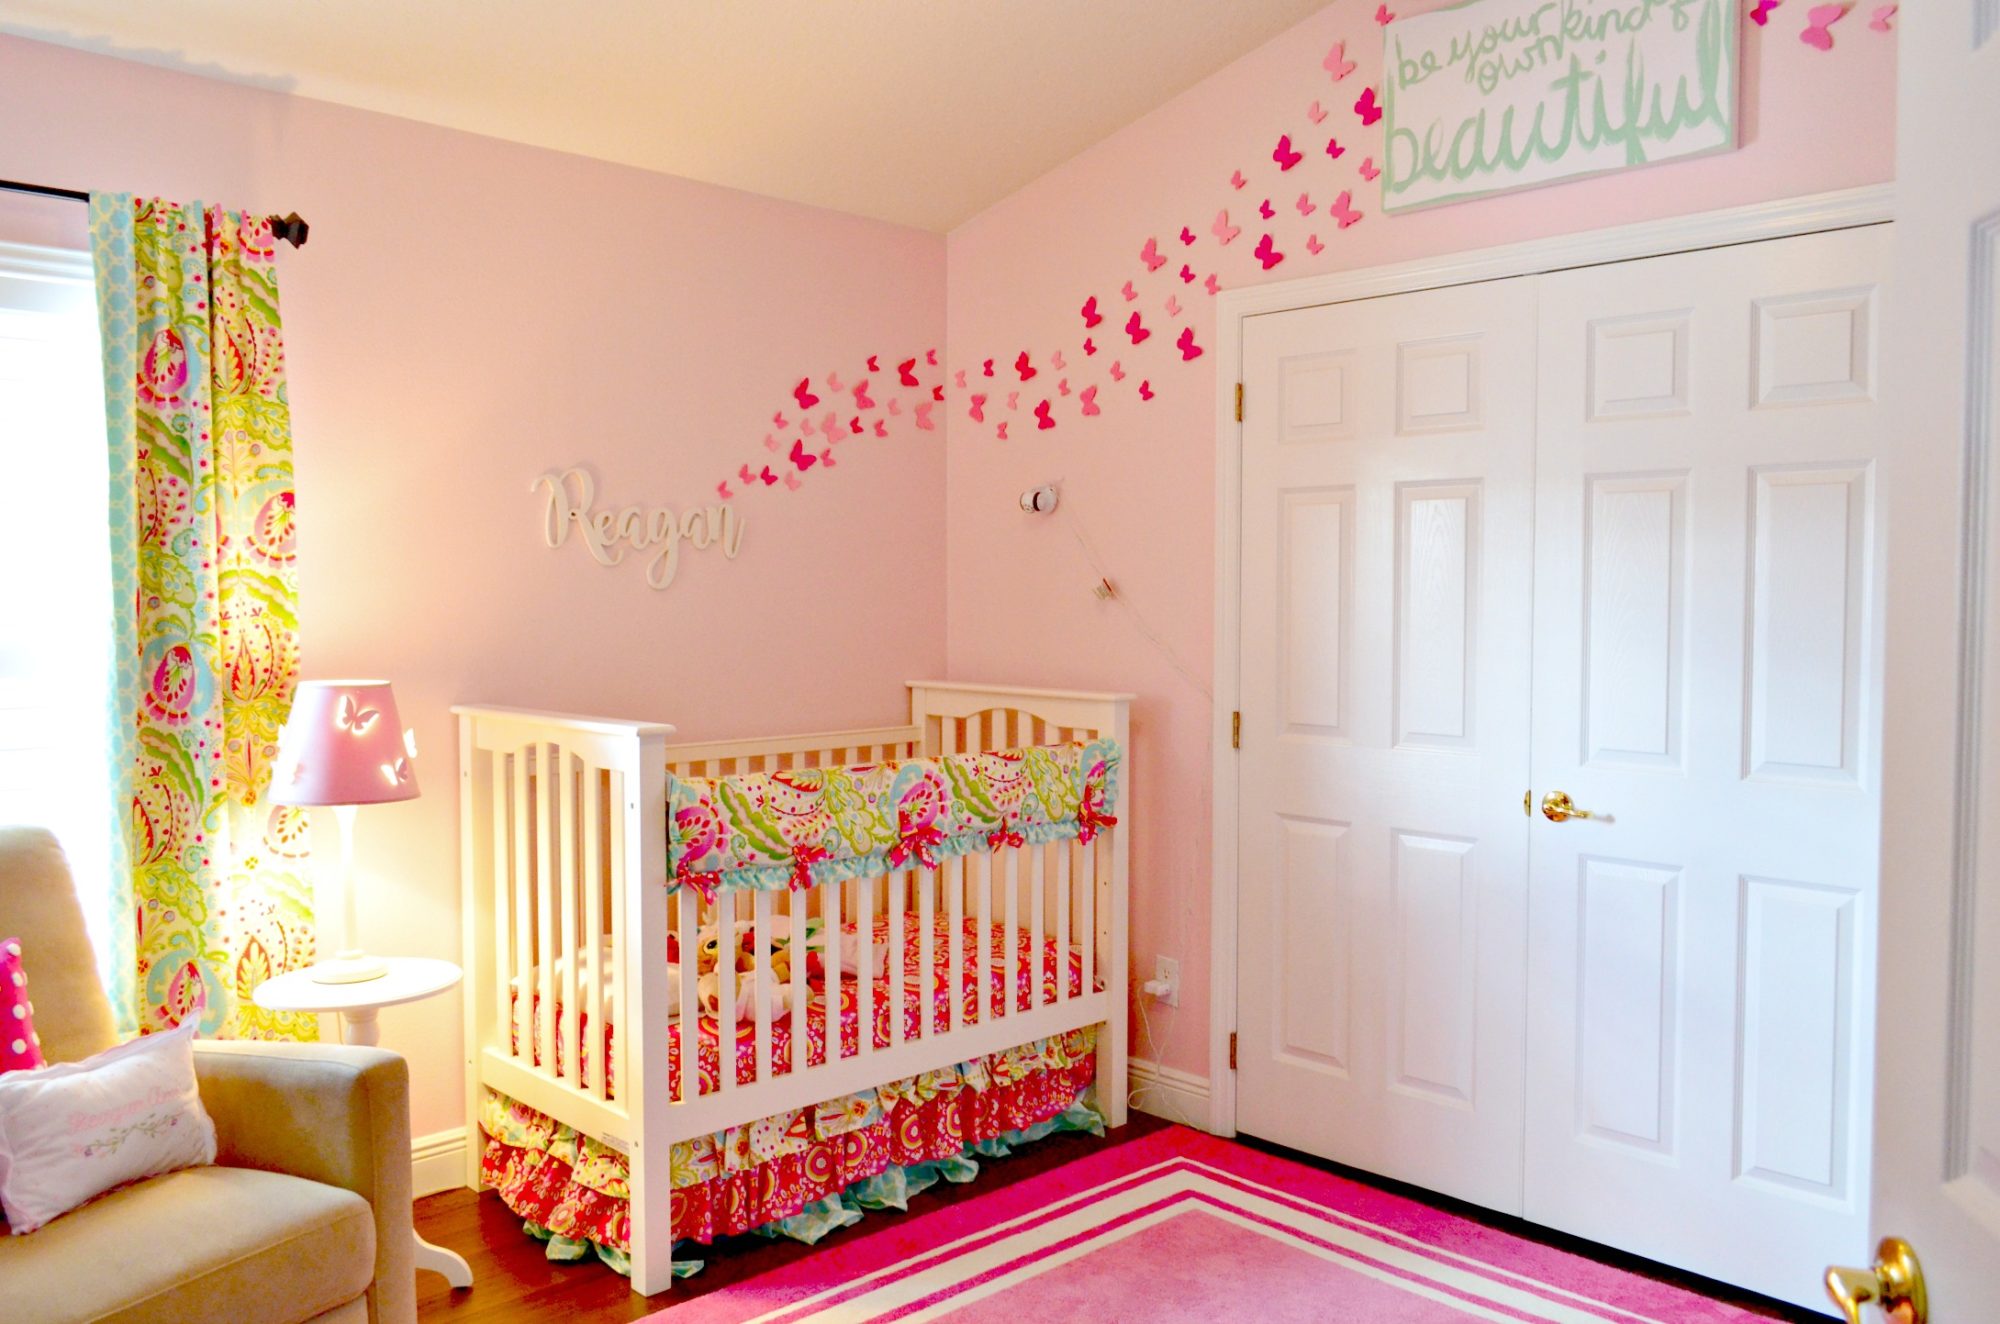 Create a Paper Butterfly Wall in Nursery